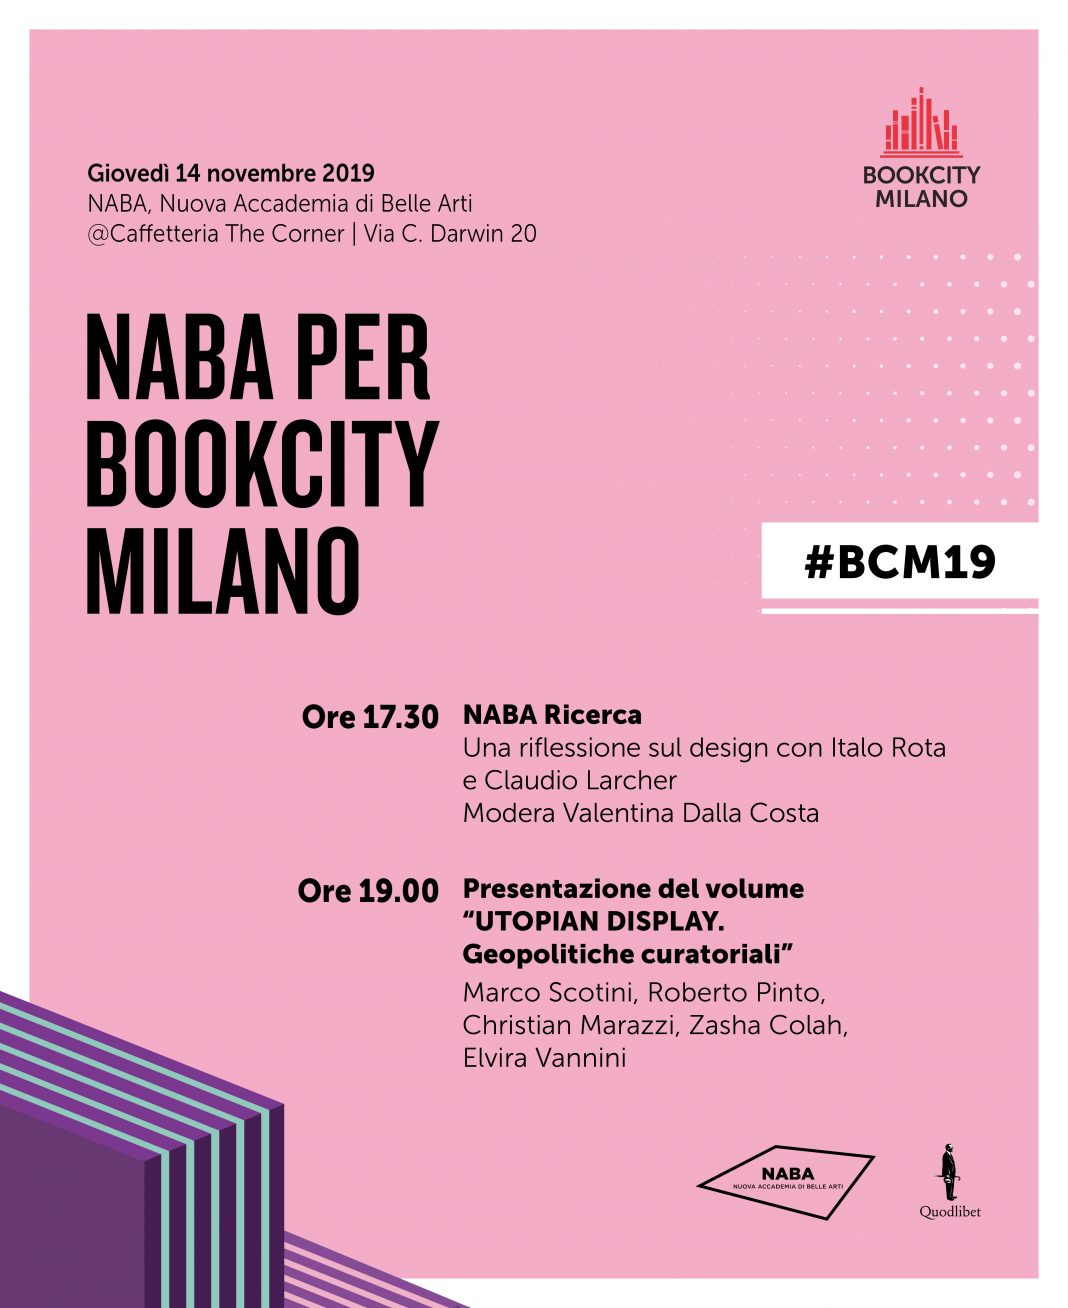 NABA, Nuova Accademia di Belle Arti per Bookcity Milanohttps://www.exibart.com/repository/media/formidable/11/NABA_invito_Bookcity-2019-1068x1308.jpg